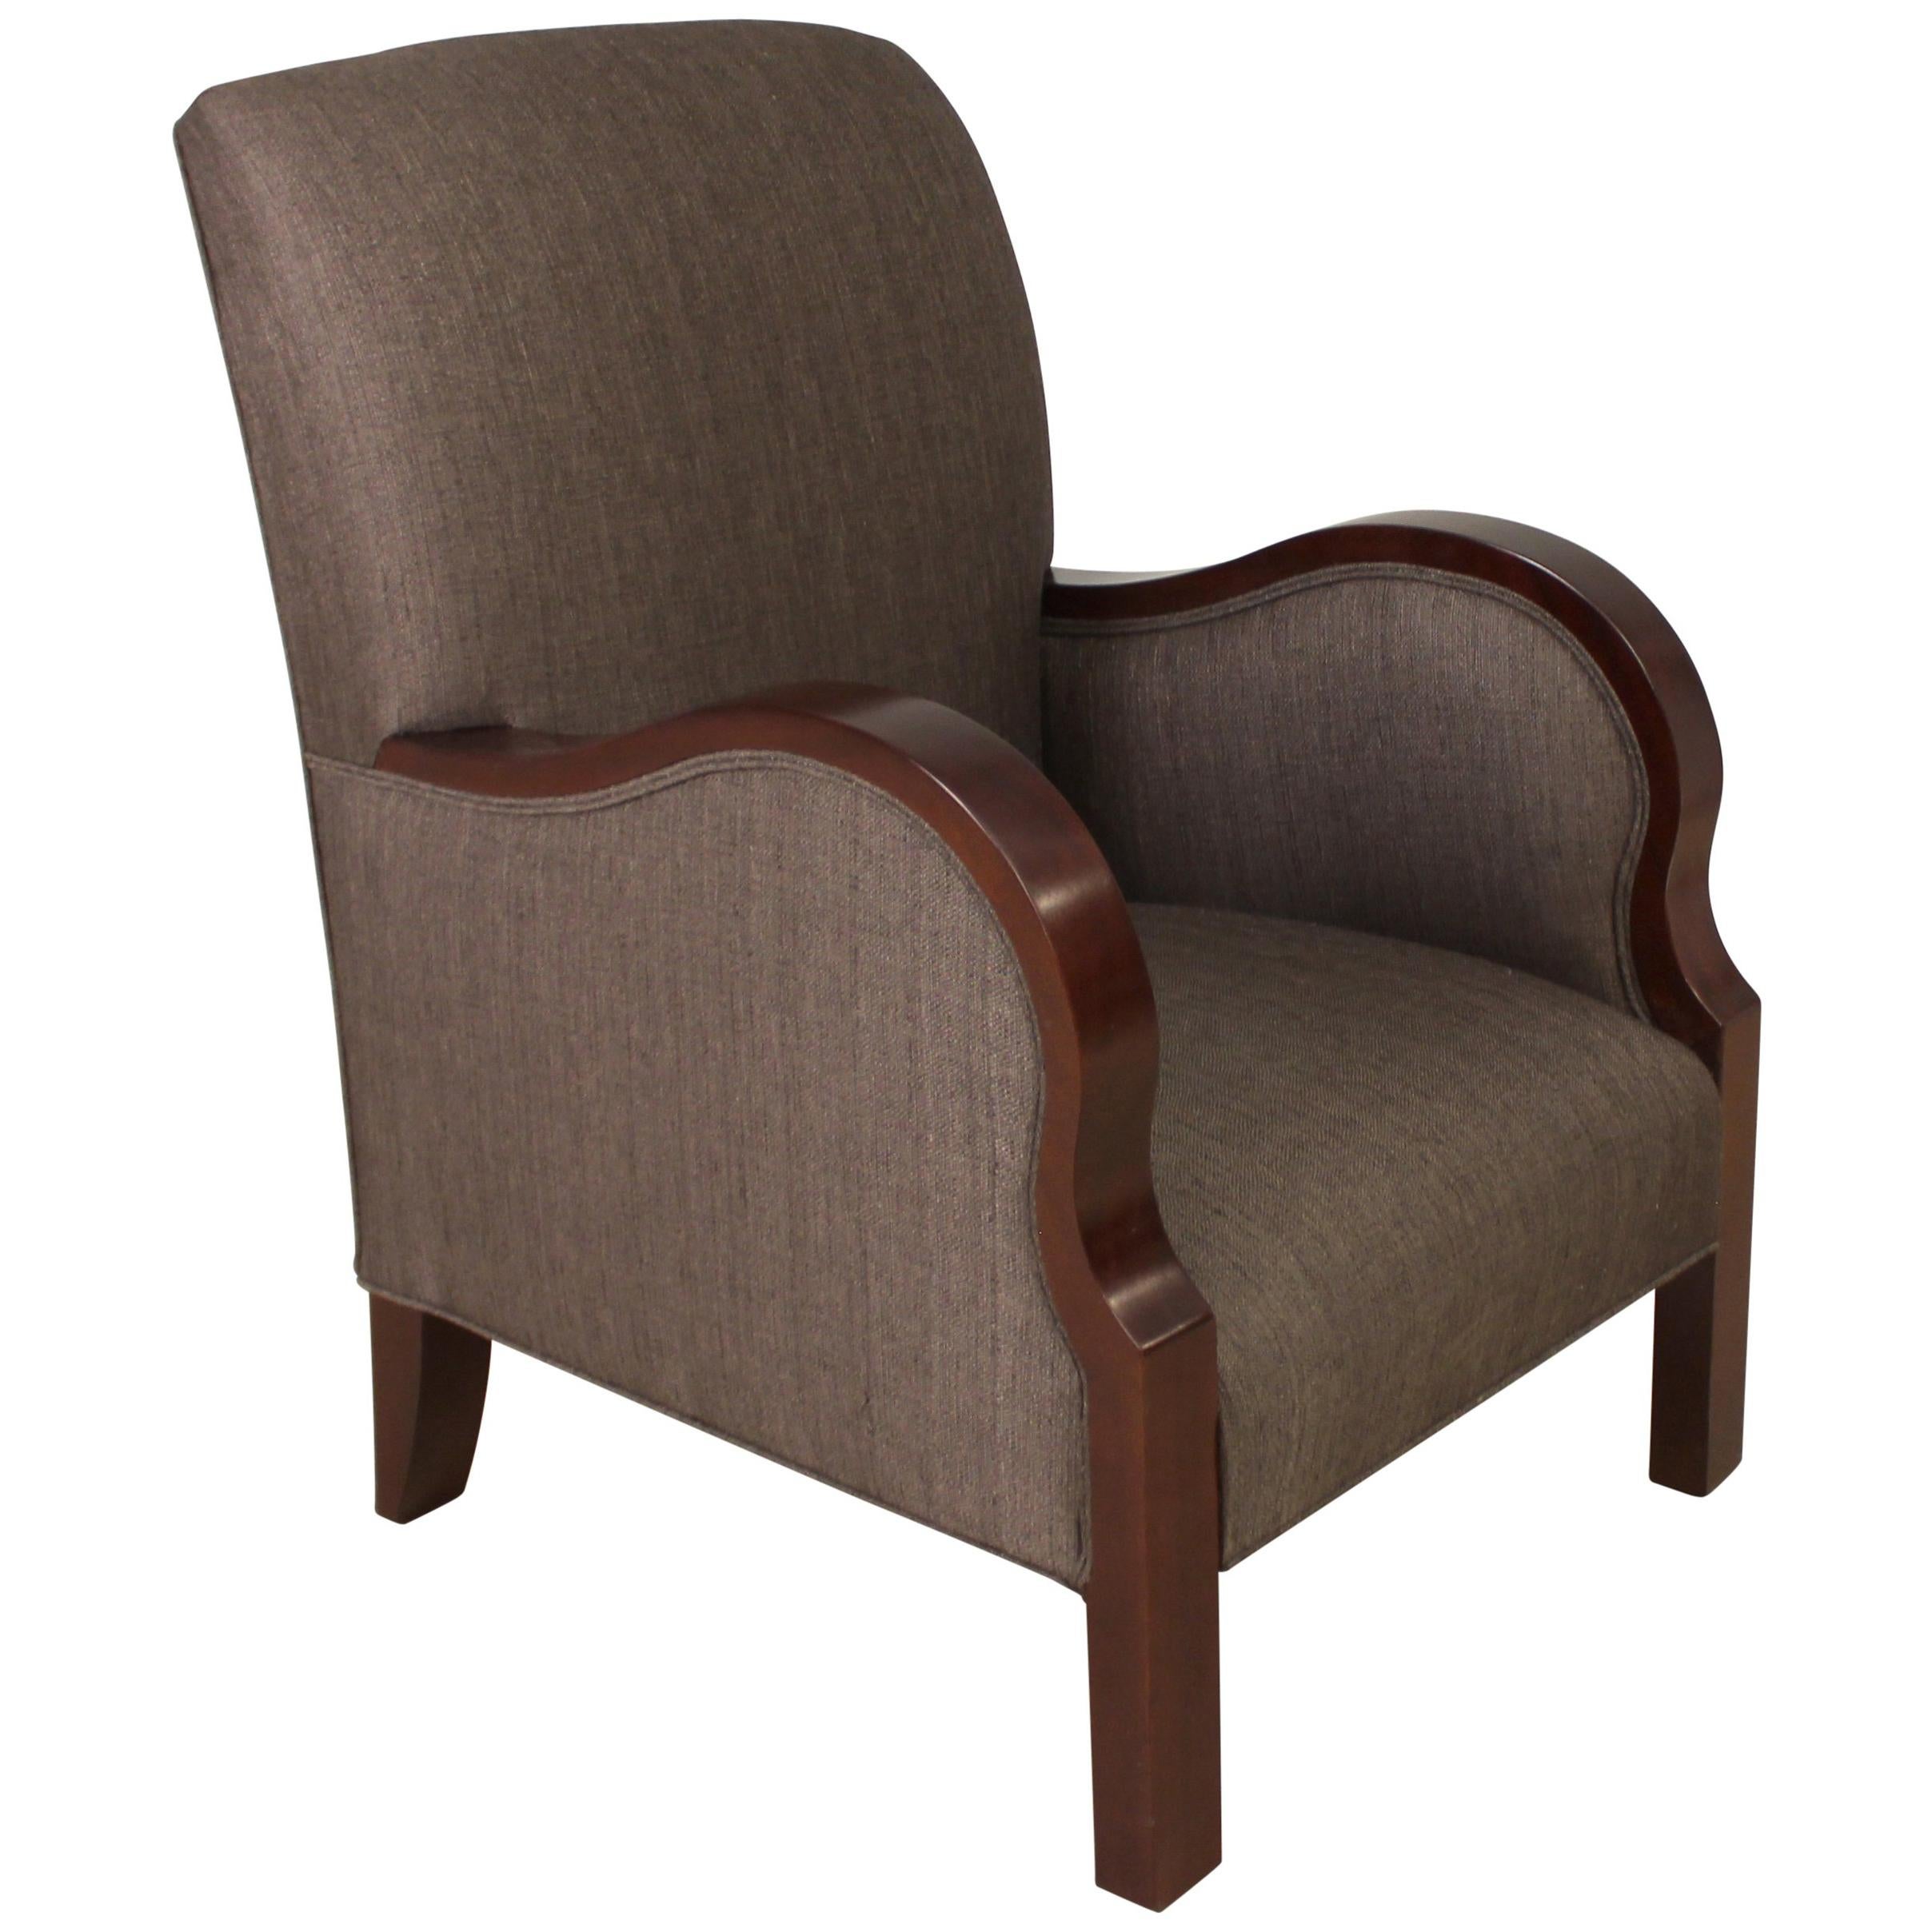 Modernist series Club Chair